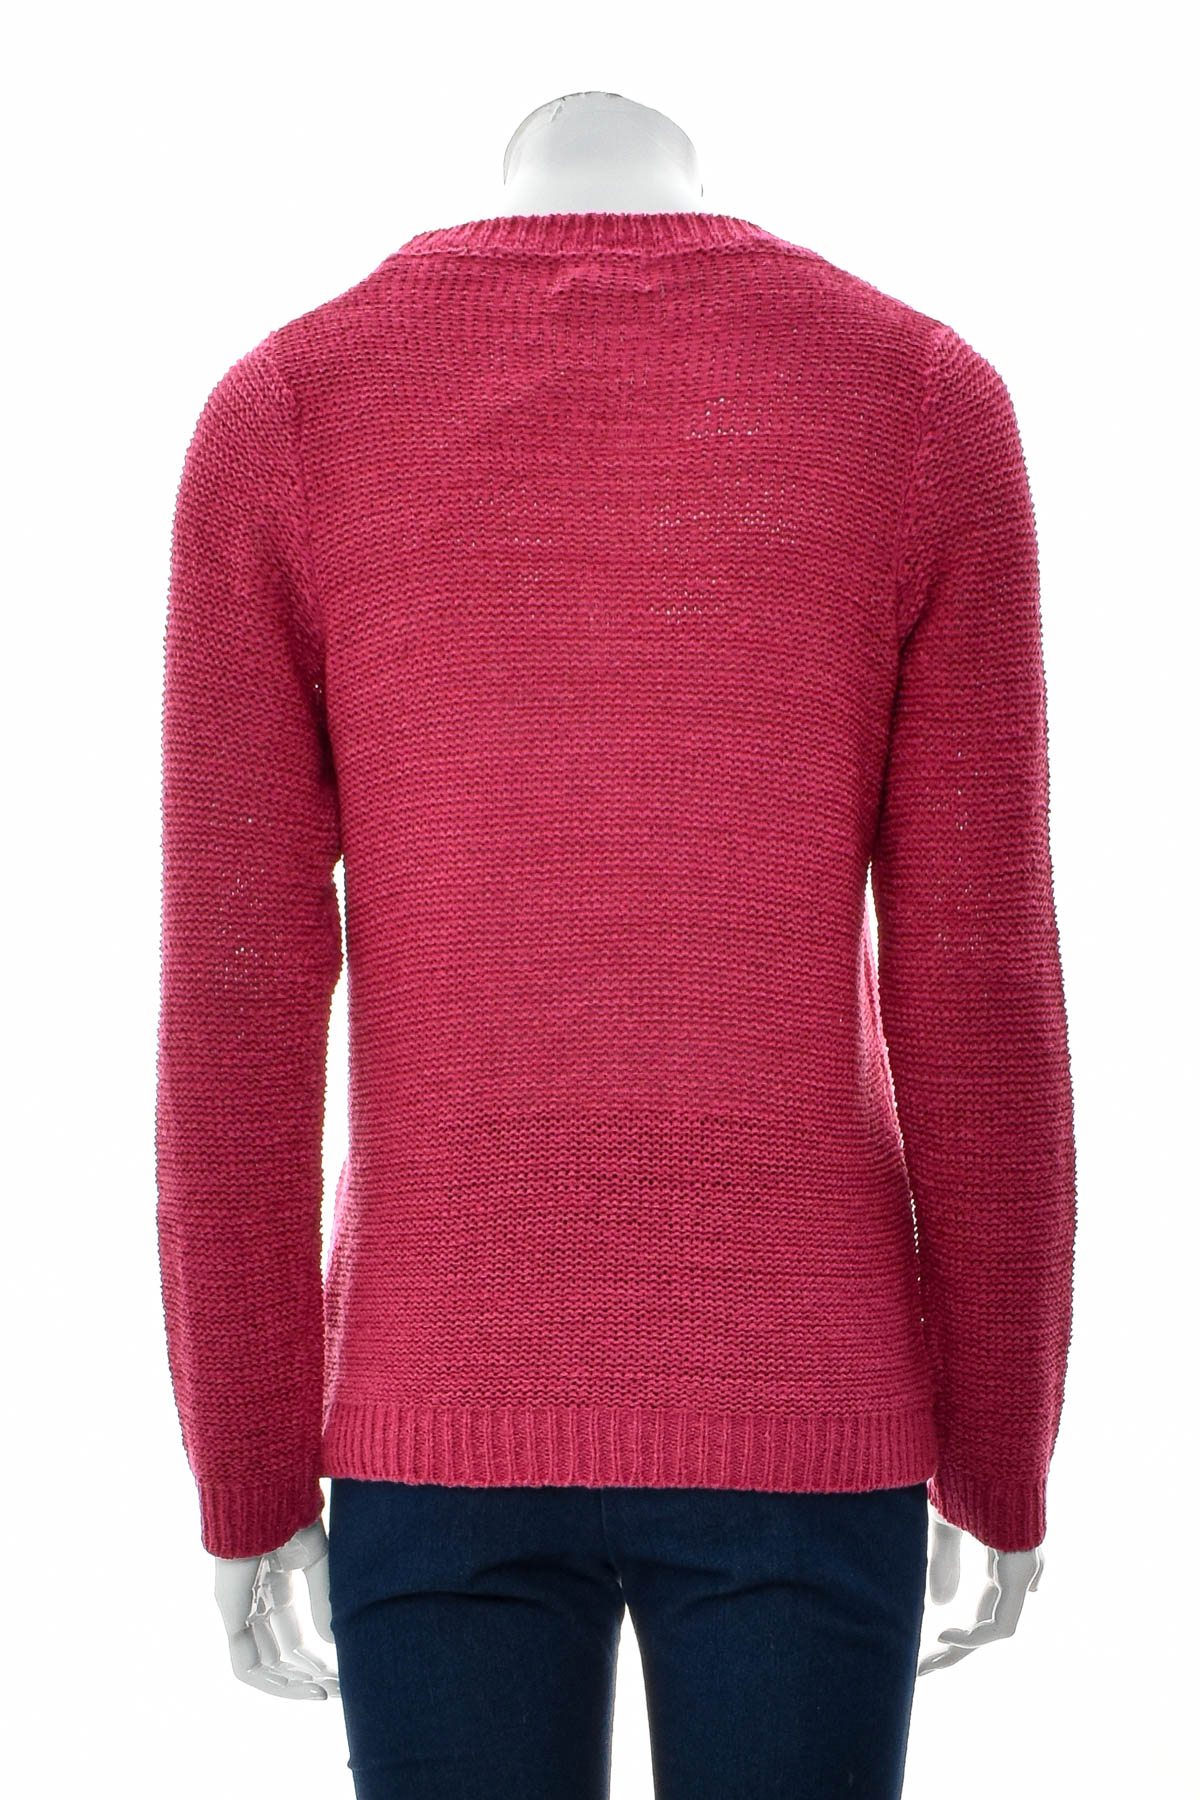 Women's sweater - Dress In - 1